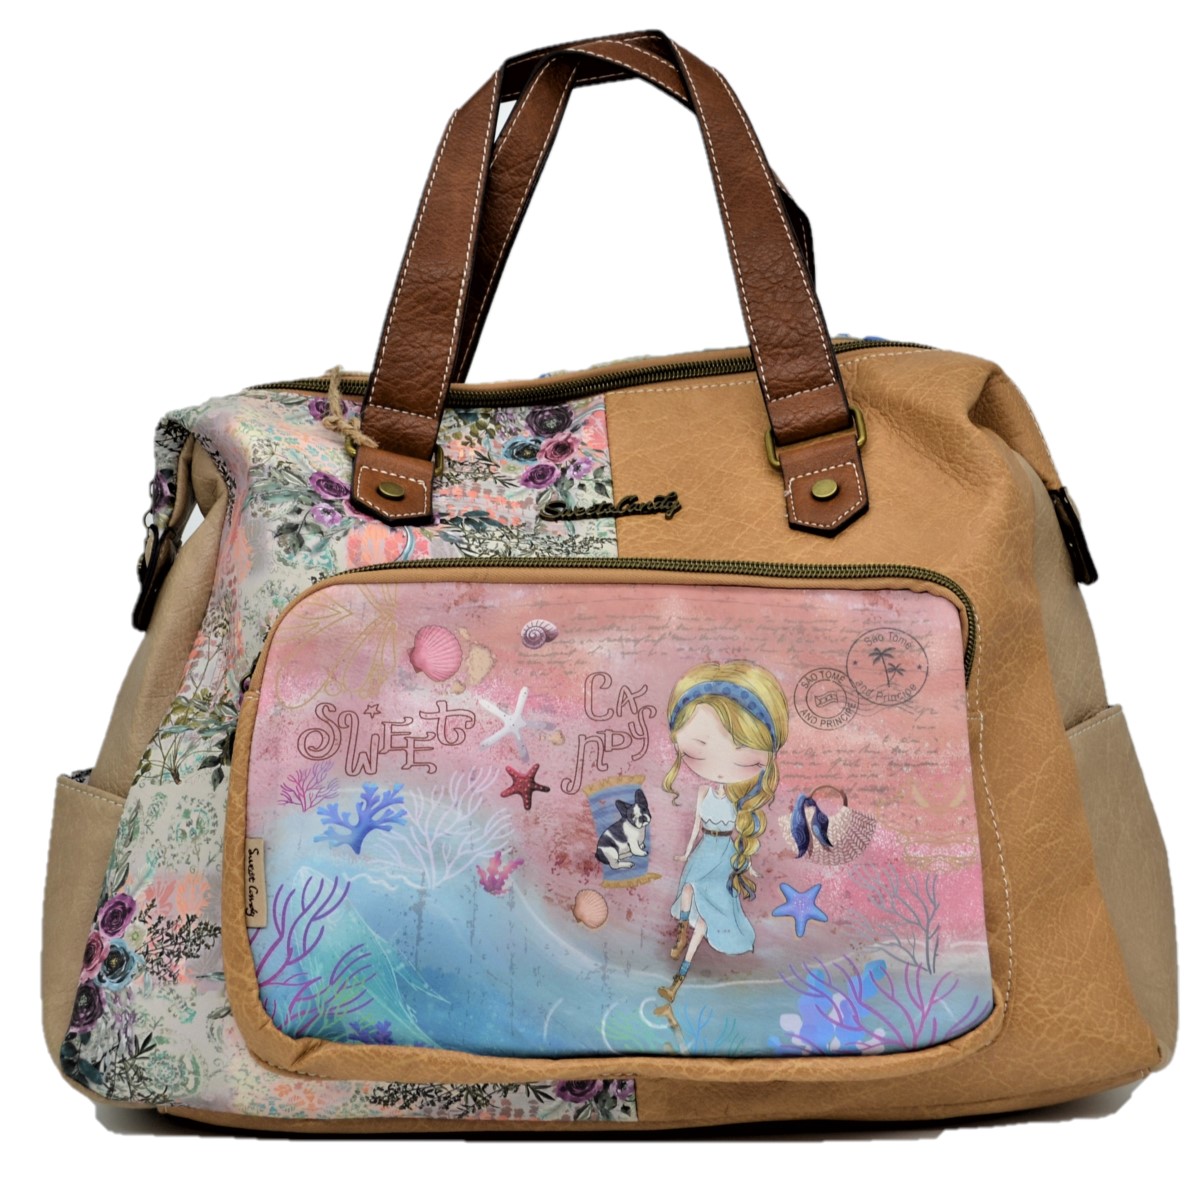 Sweet Candy shopper táska, utazótáska 45 cm - Tópart